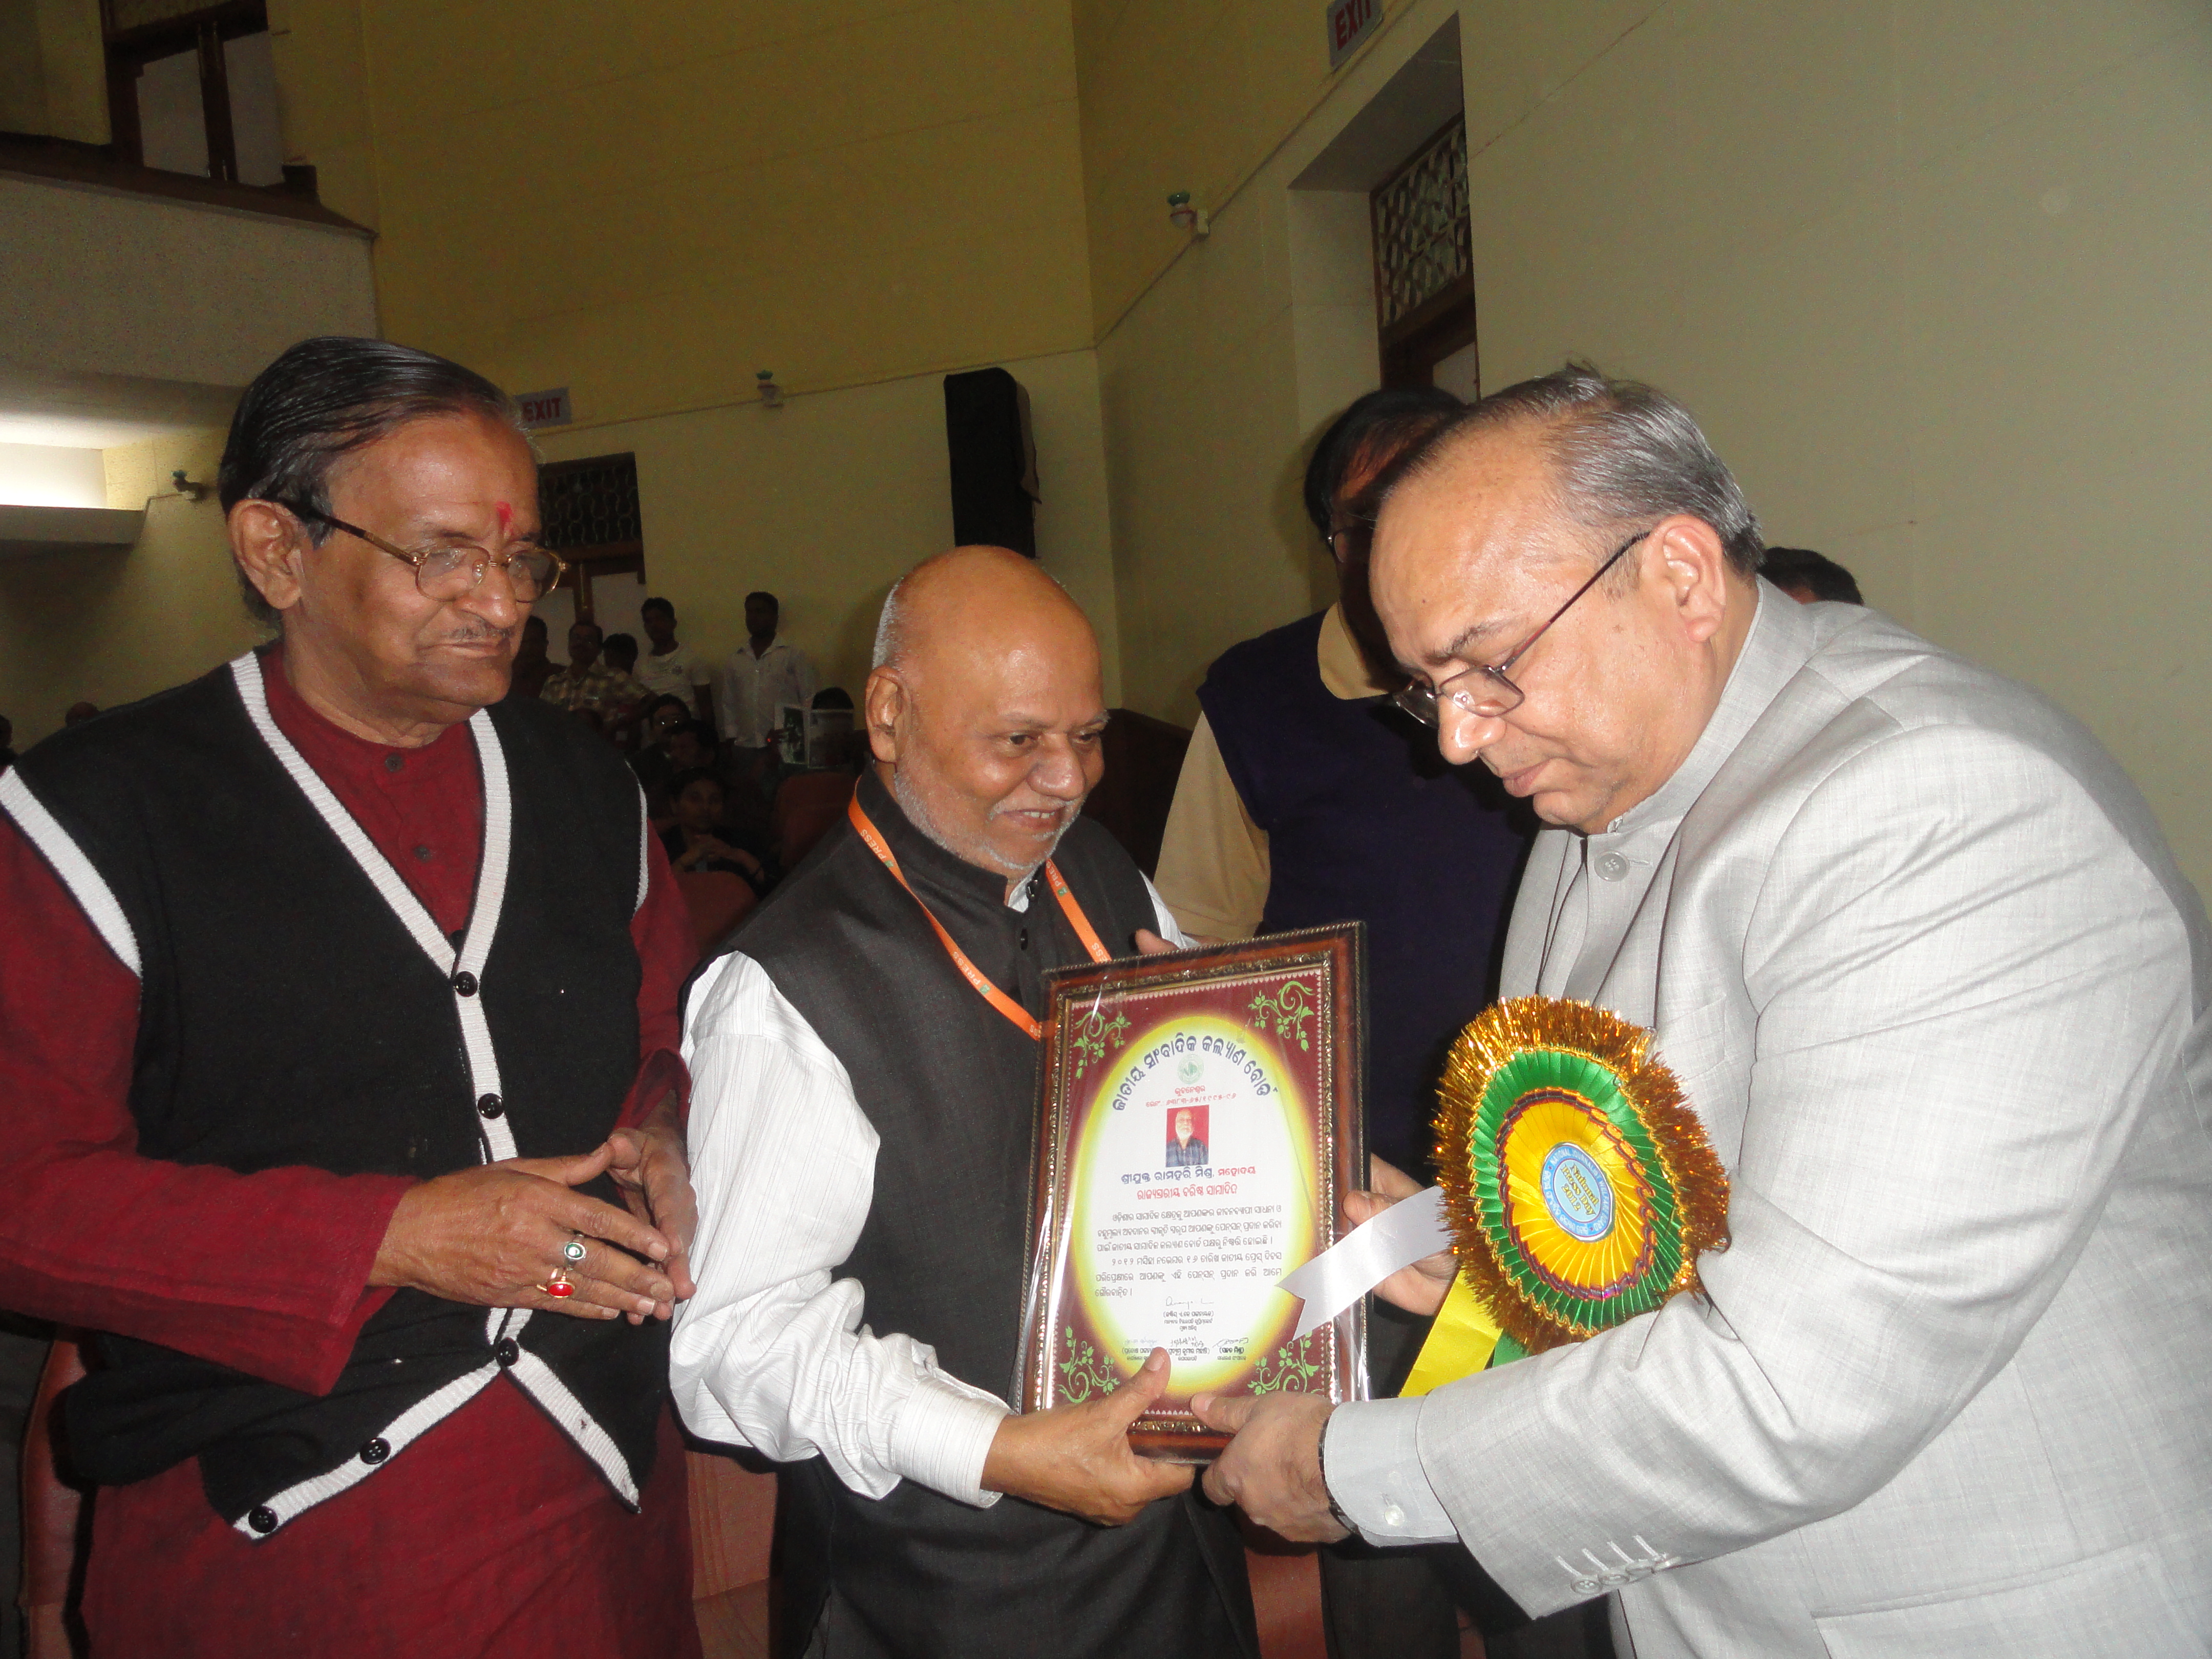 Ramahari Sir recieving award